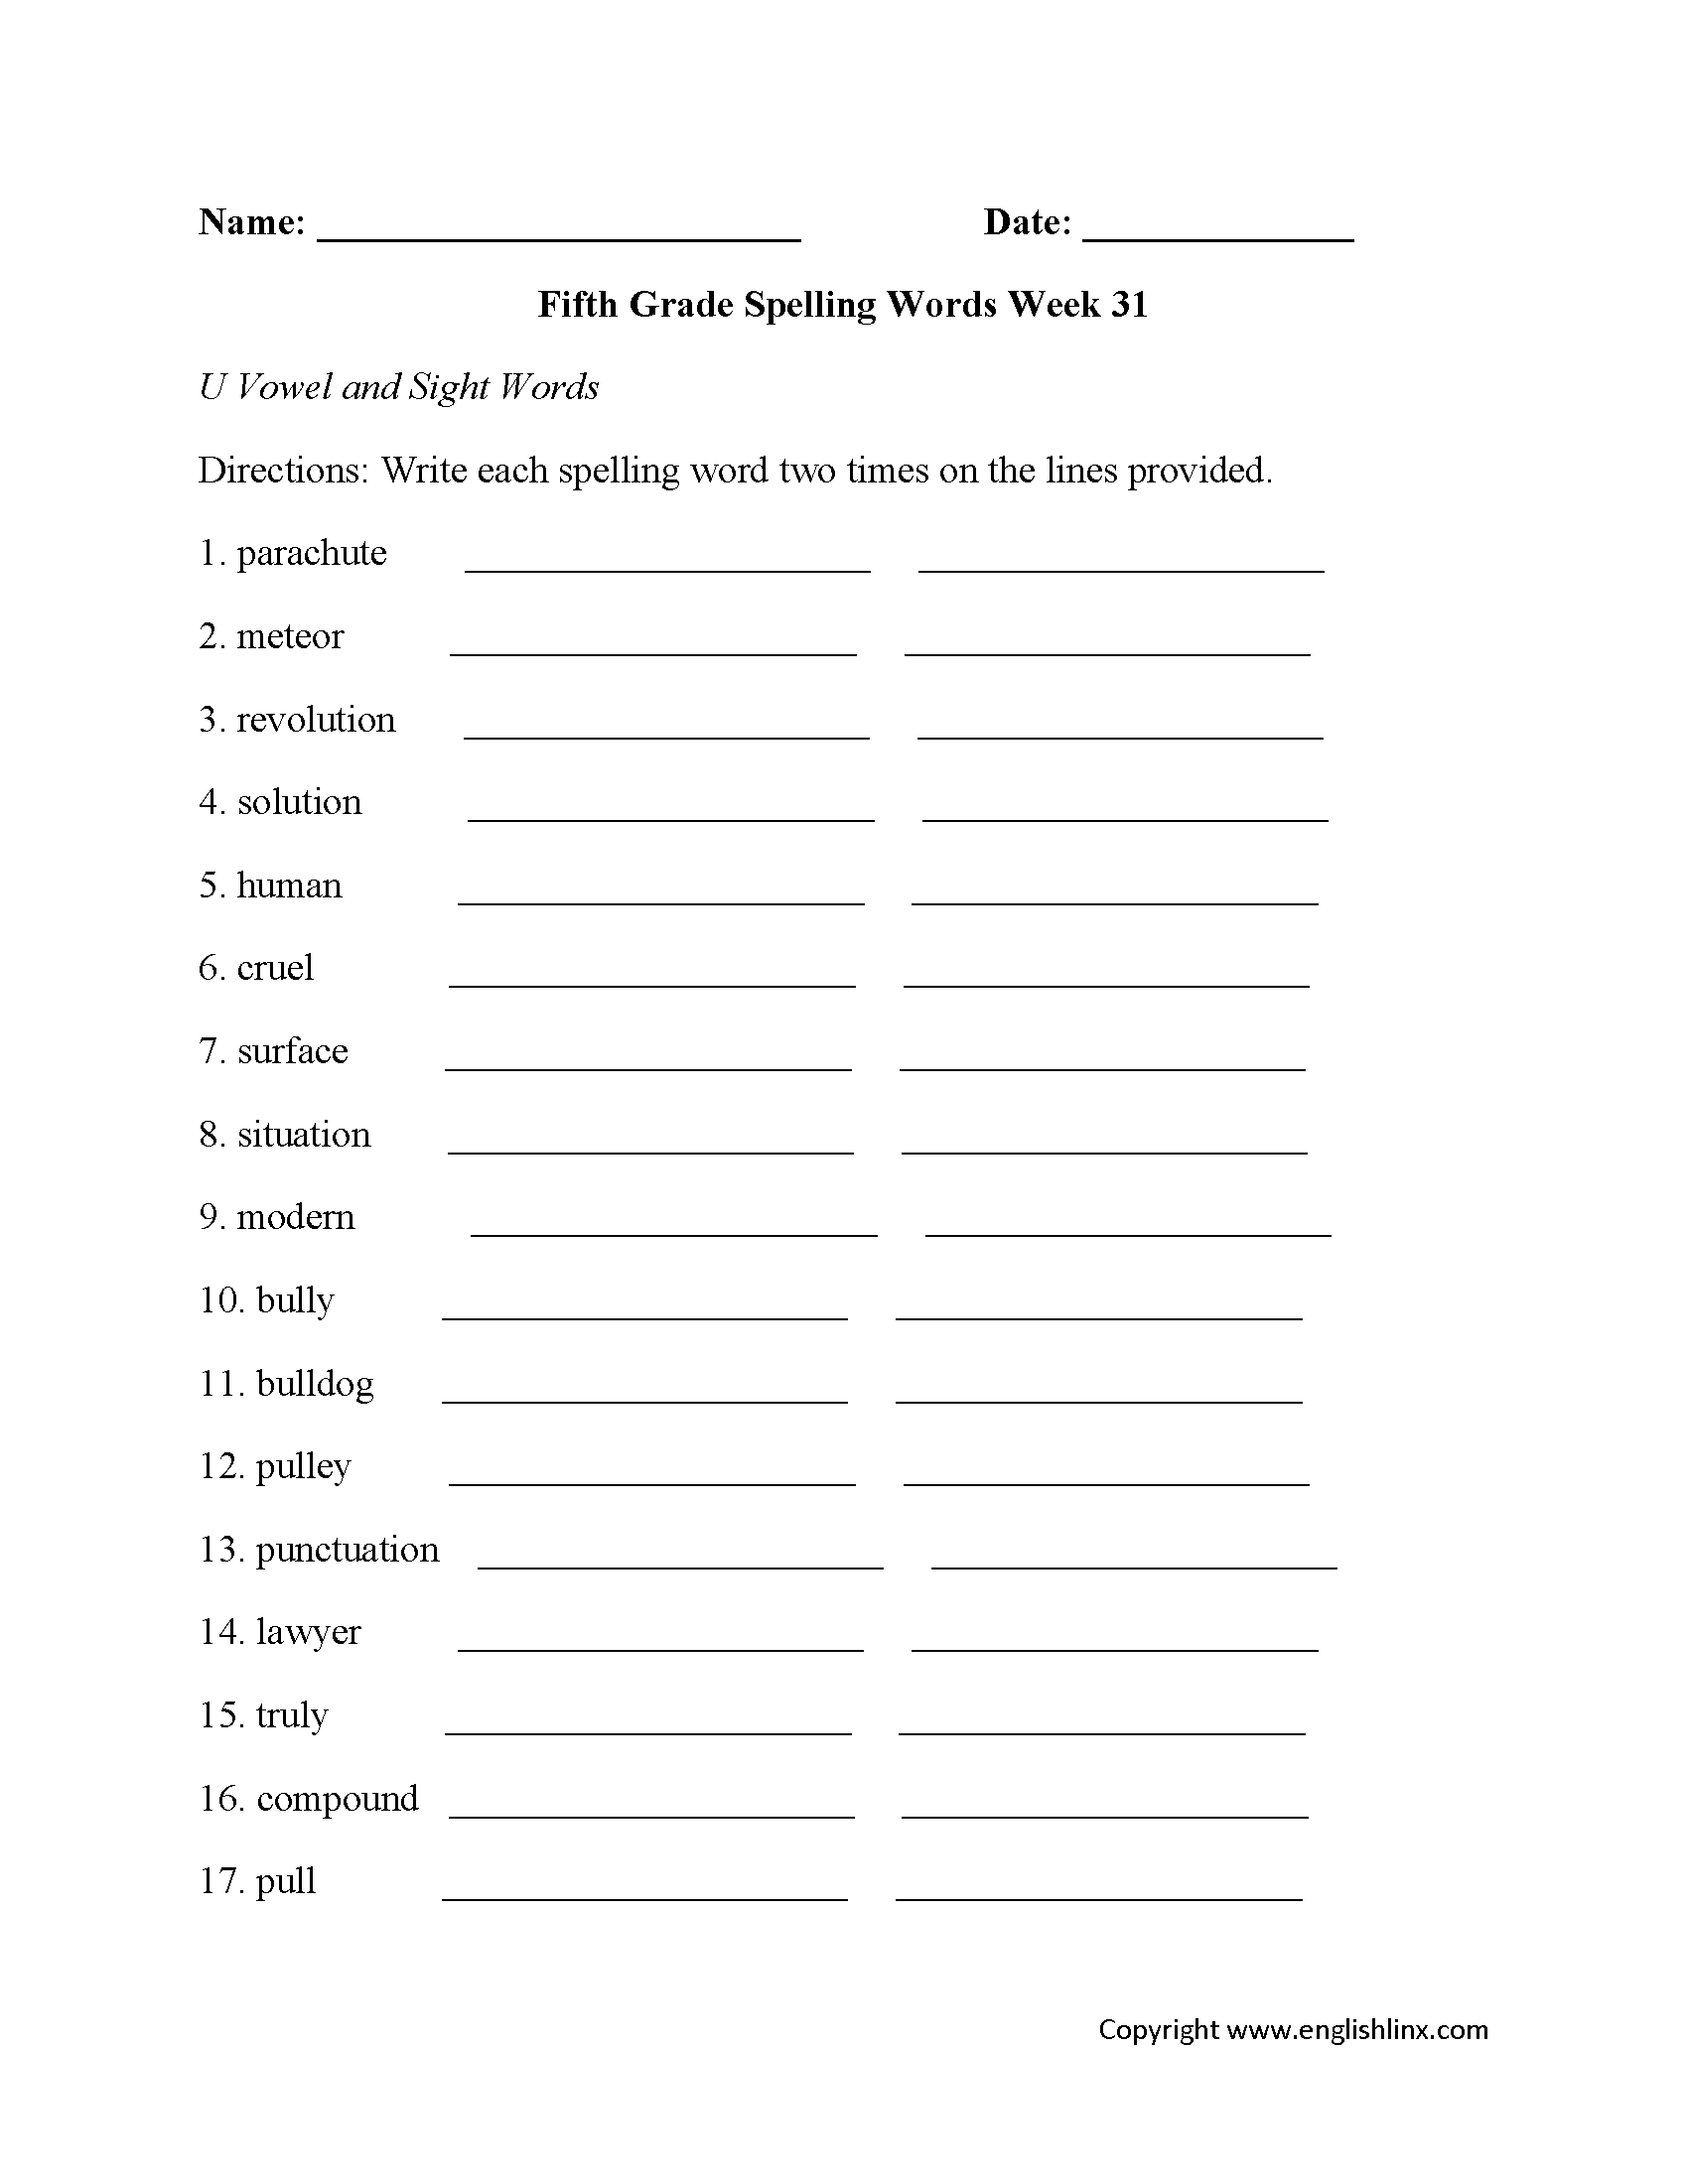 Week 31 U Vowel Fifth Grade Spelling Worksheets